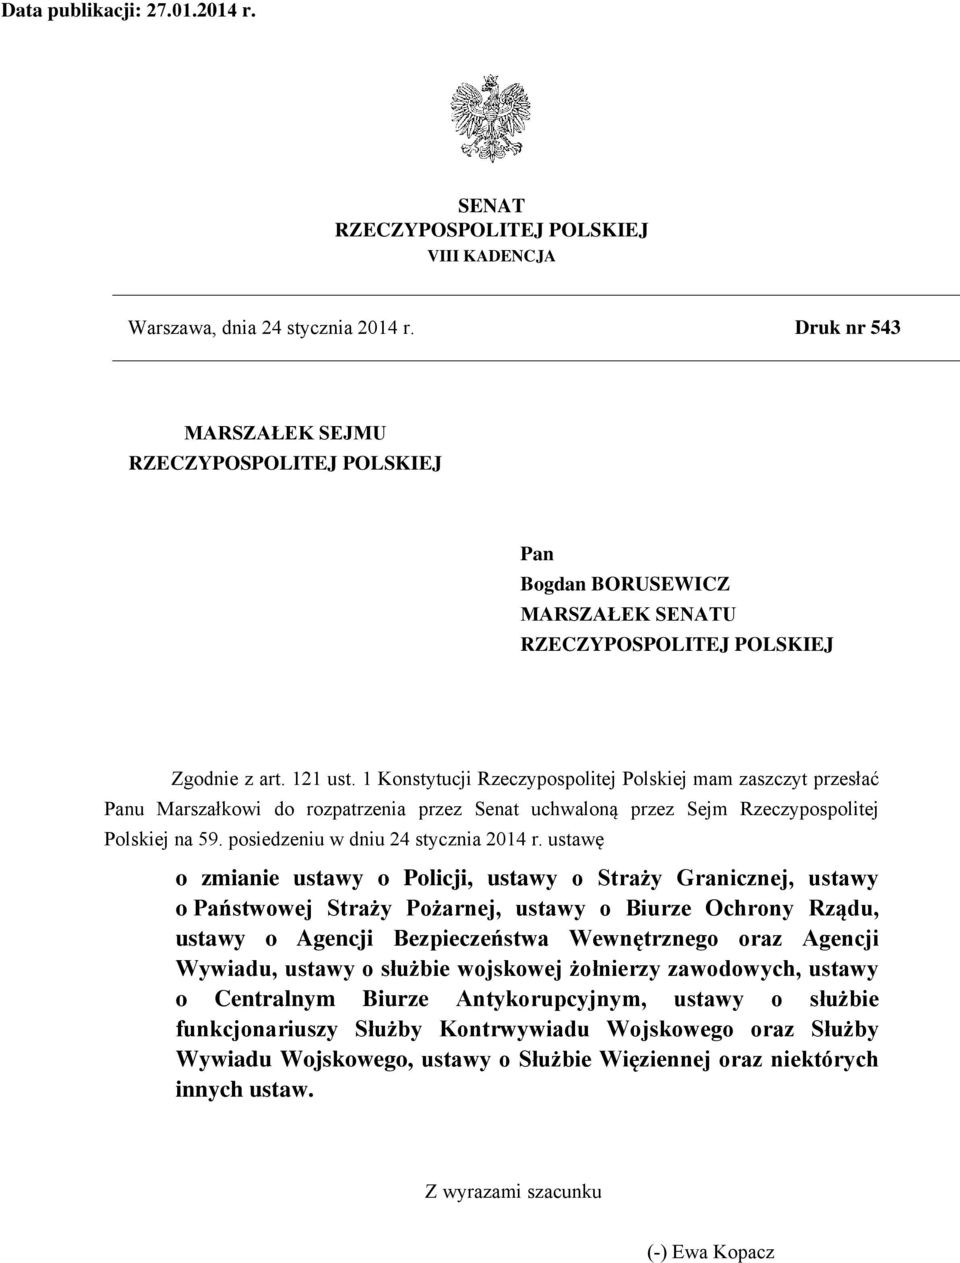 1 Konstytucji Rzeczypospolitej Polskiej mam zaszczyt przesłać Panu Marszałkowi do rozpatrzenia przez Senat uchwaloną przez Sejm Rzeczypospolitej Polskiej na 59. posiedzeniu w dniu 24 stycznia 2014 r.